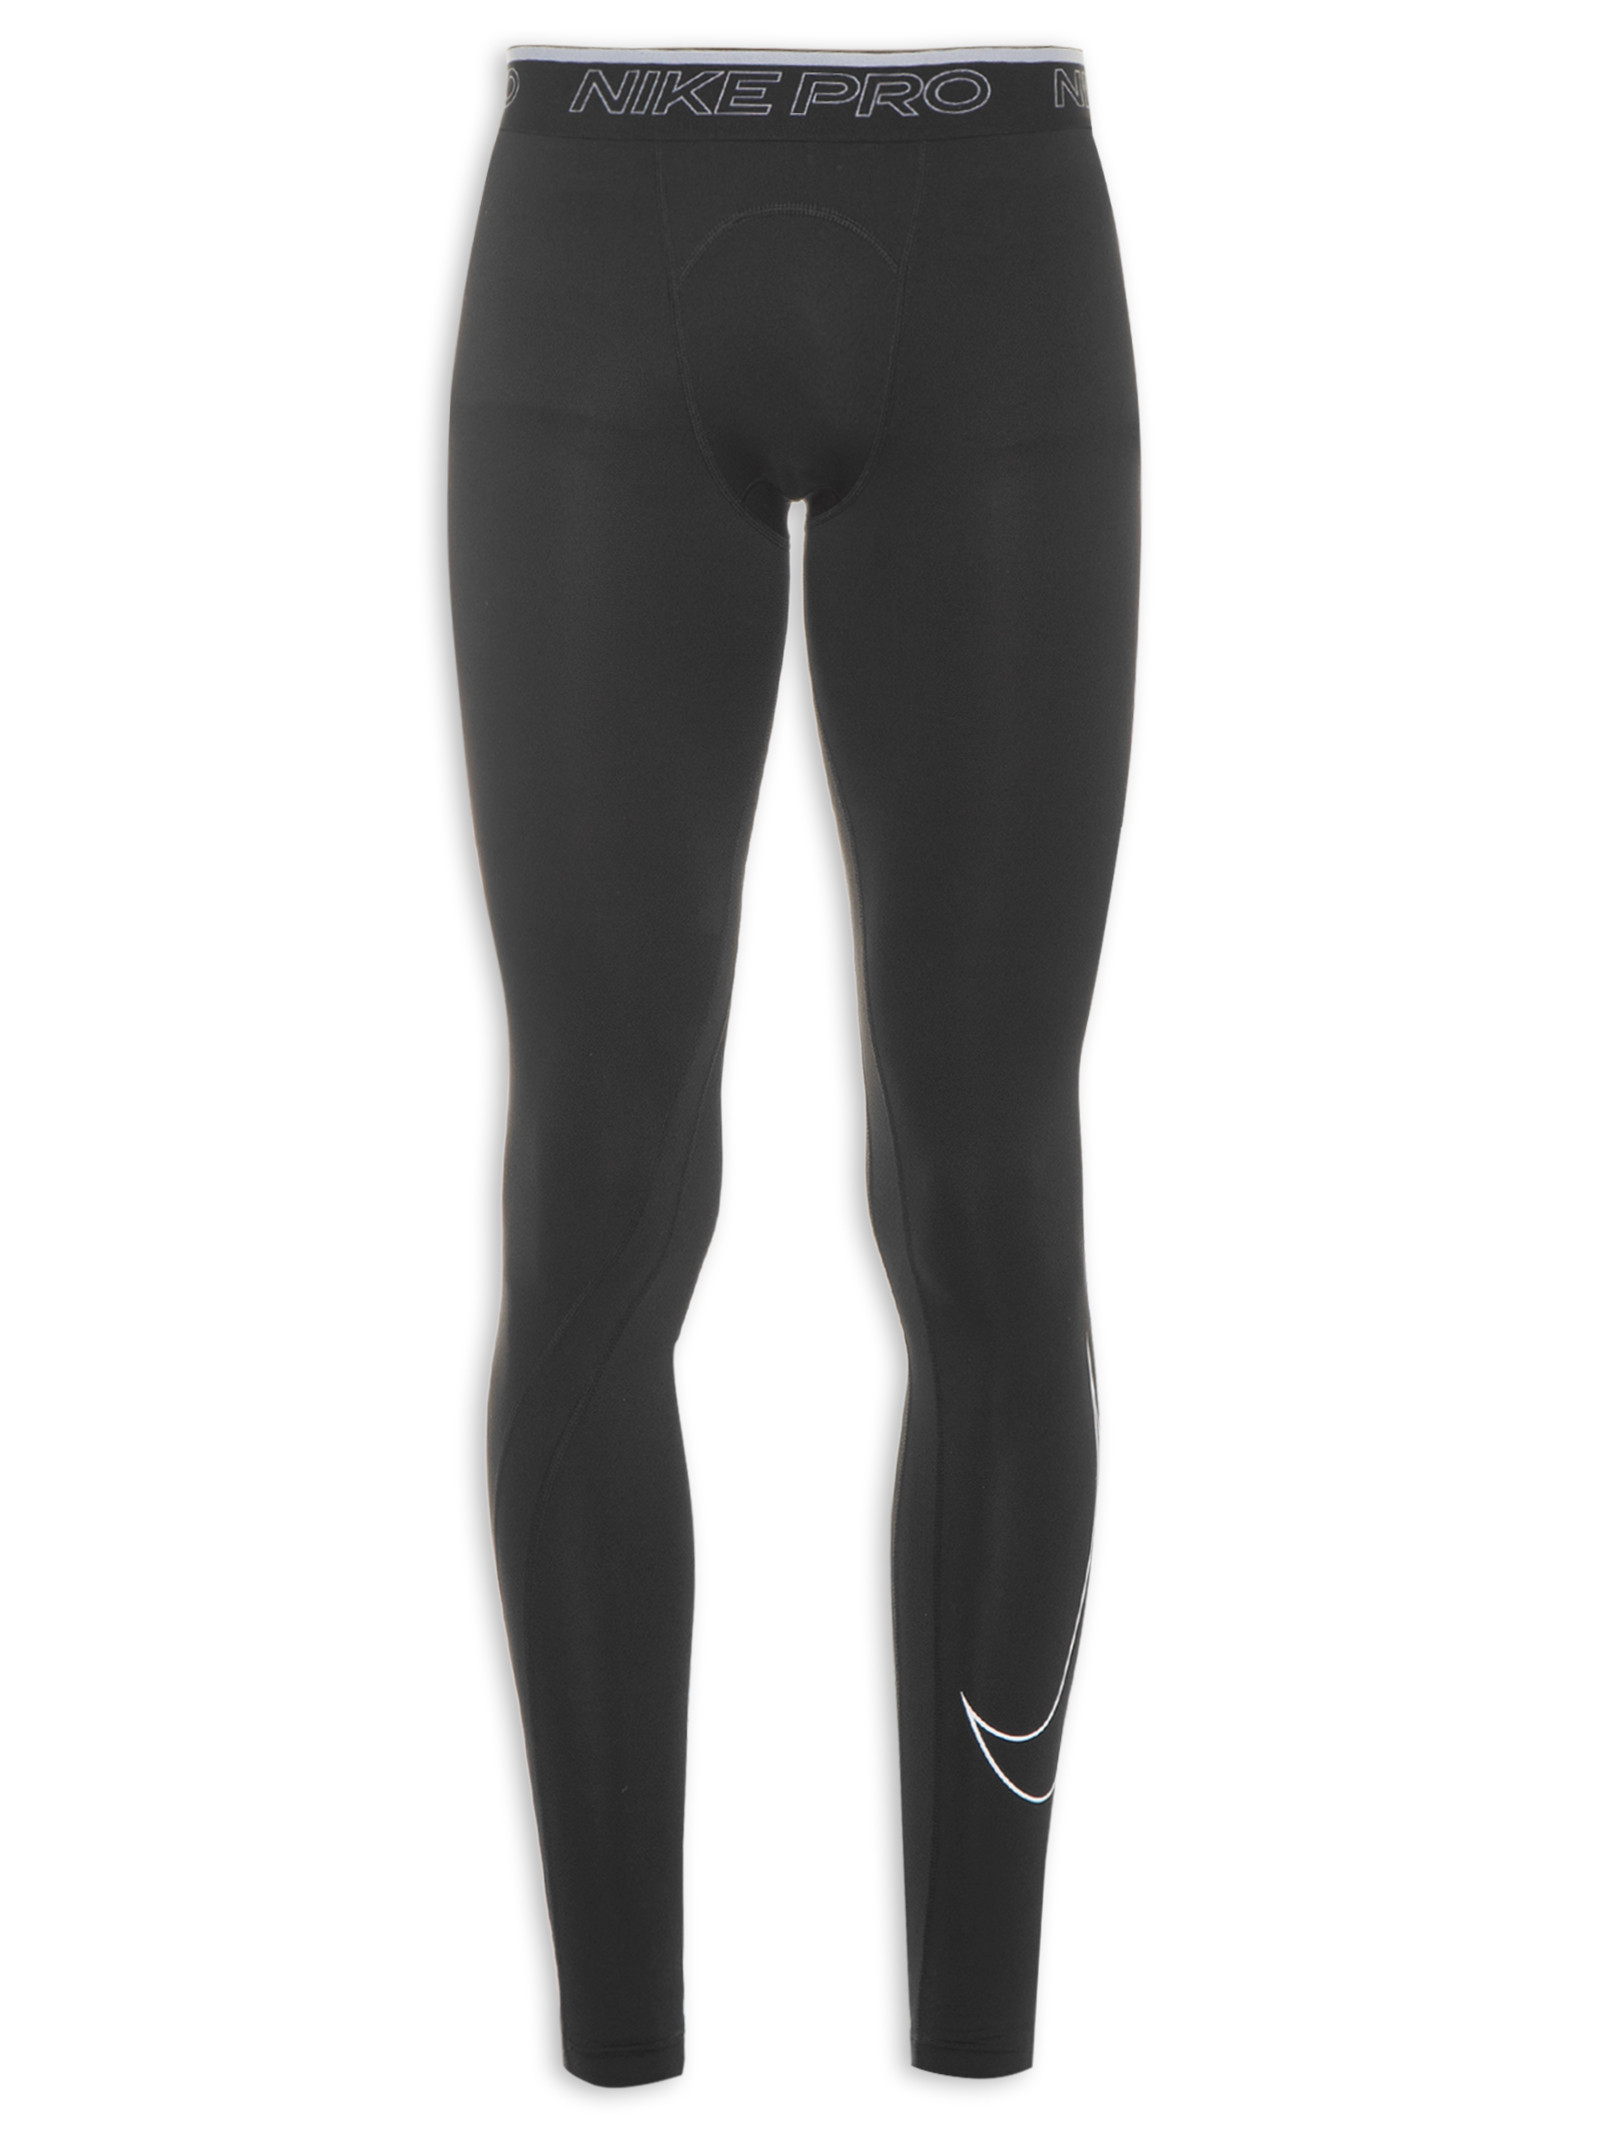 Calça Masculina Legging Pro Dri-FIT - Nike - Preto - Shop2gether